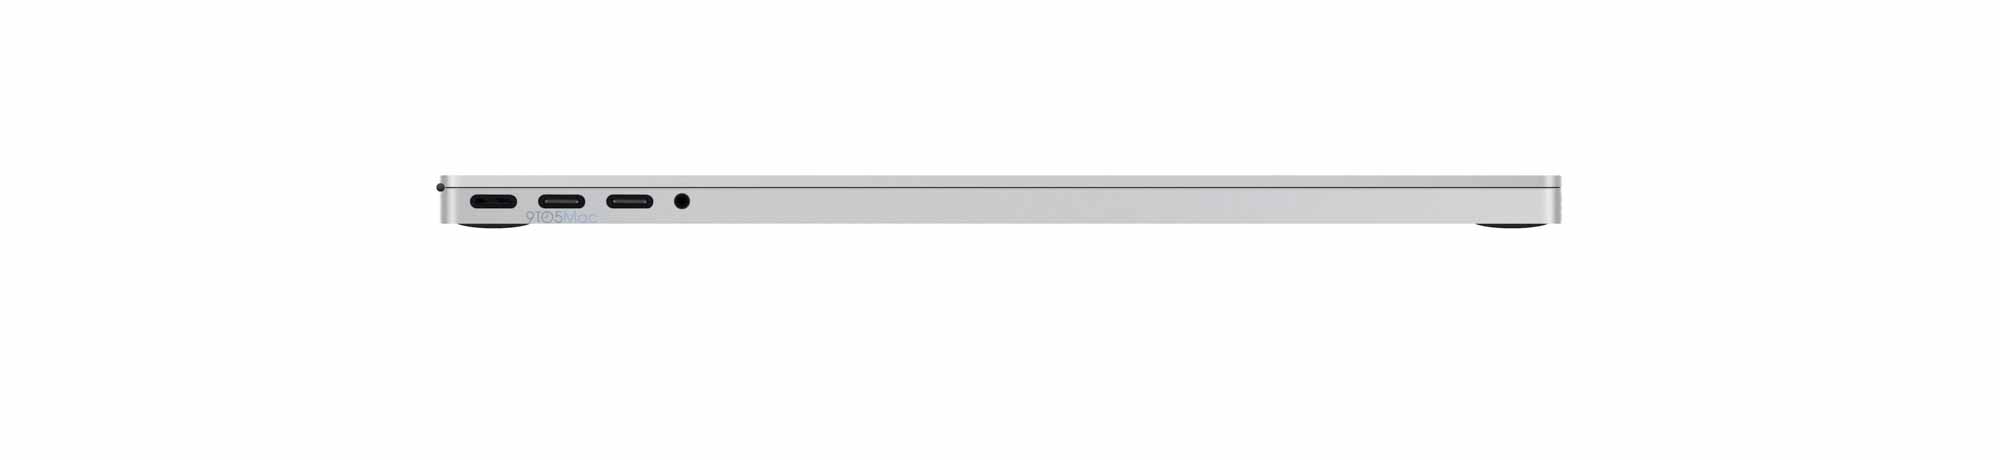 Утечка выкупа MacBook Pro 2021 года не показывает Touch Bar, подробности о расположении ввода-вывода